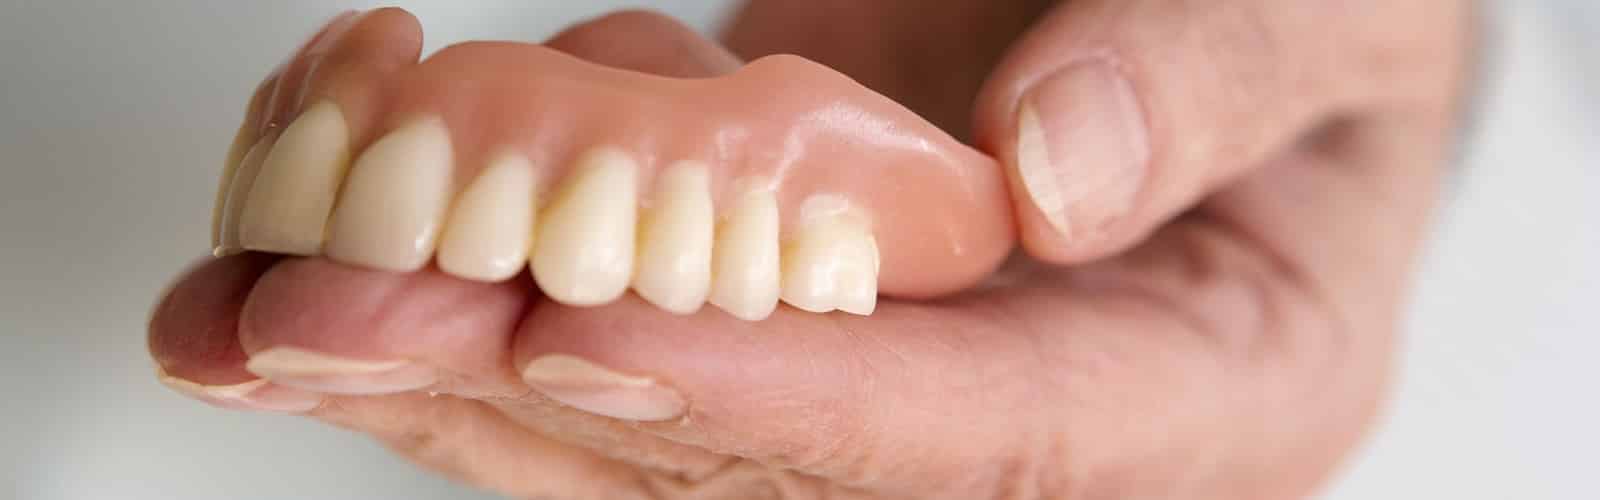 dentures denture